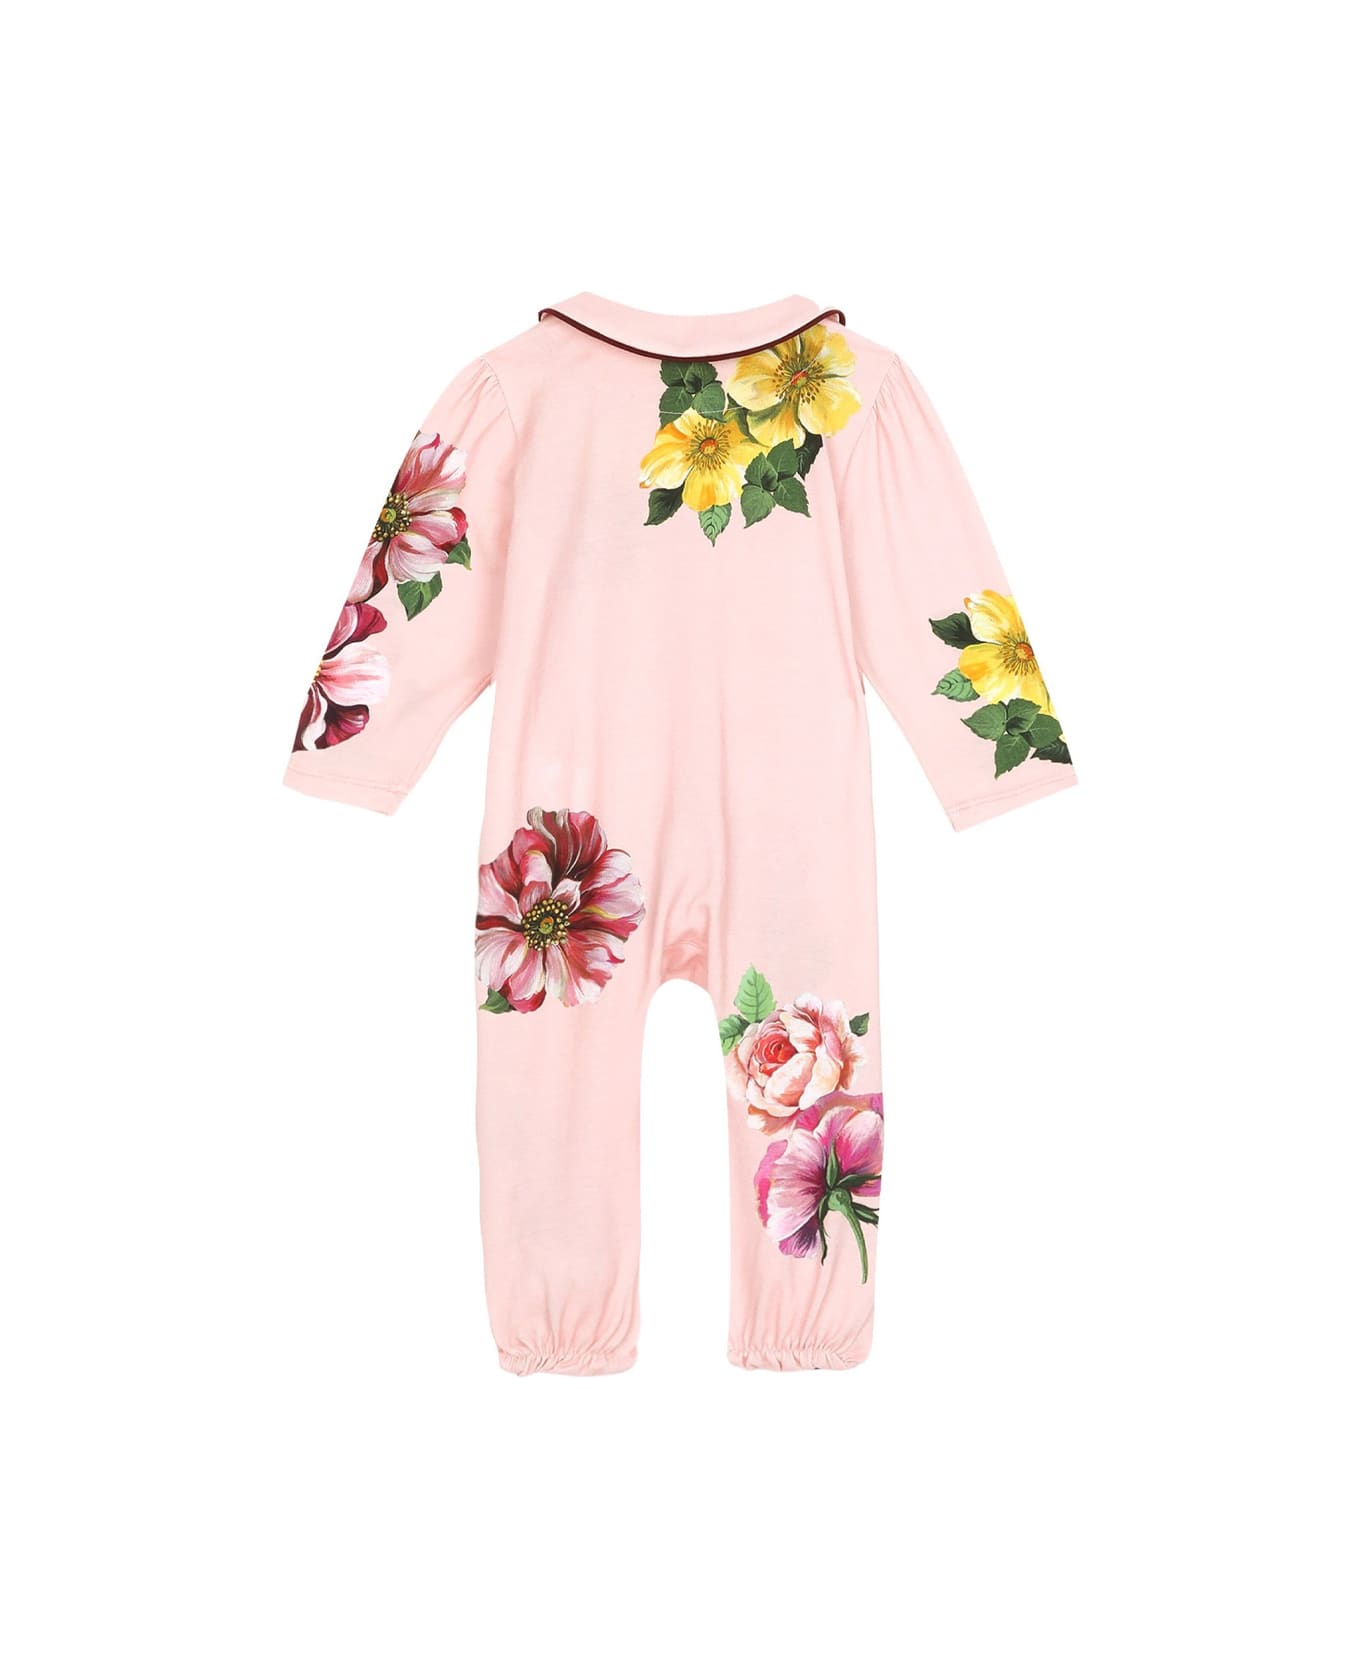 Dolce & Gabbana Floral Babysuit Set - Rose